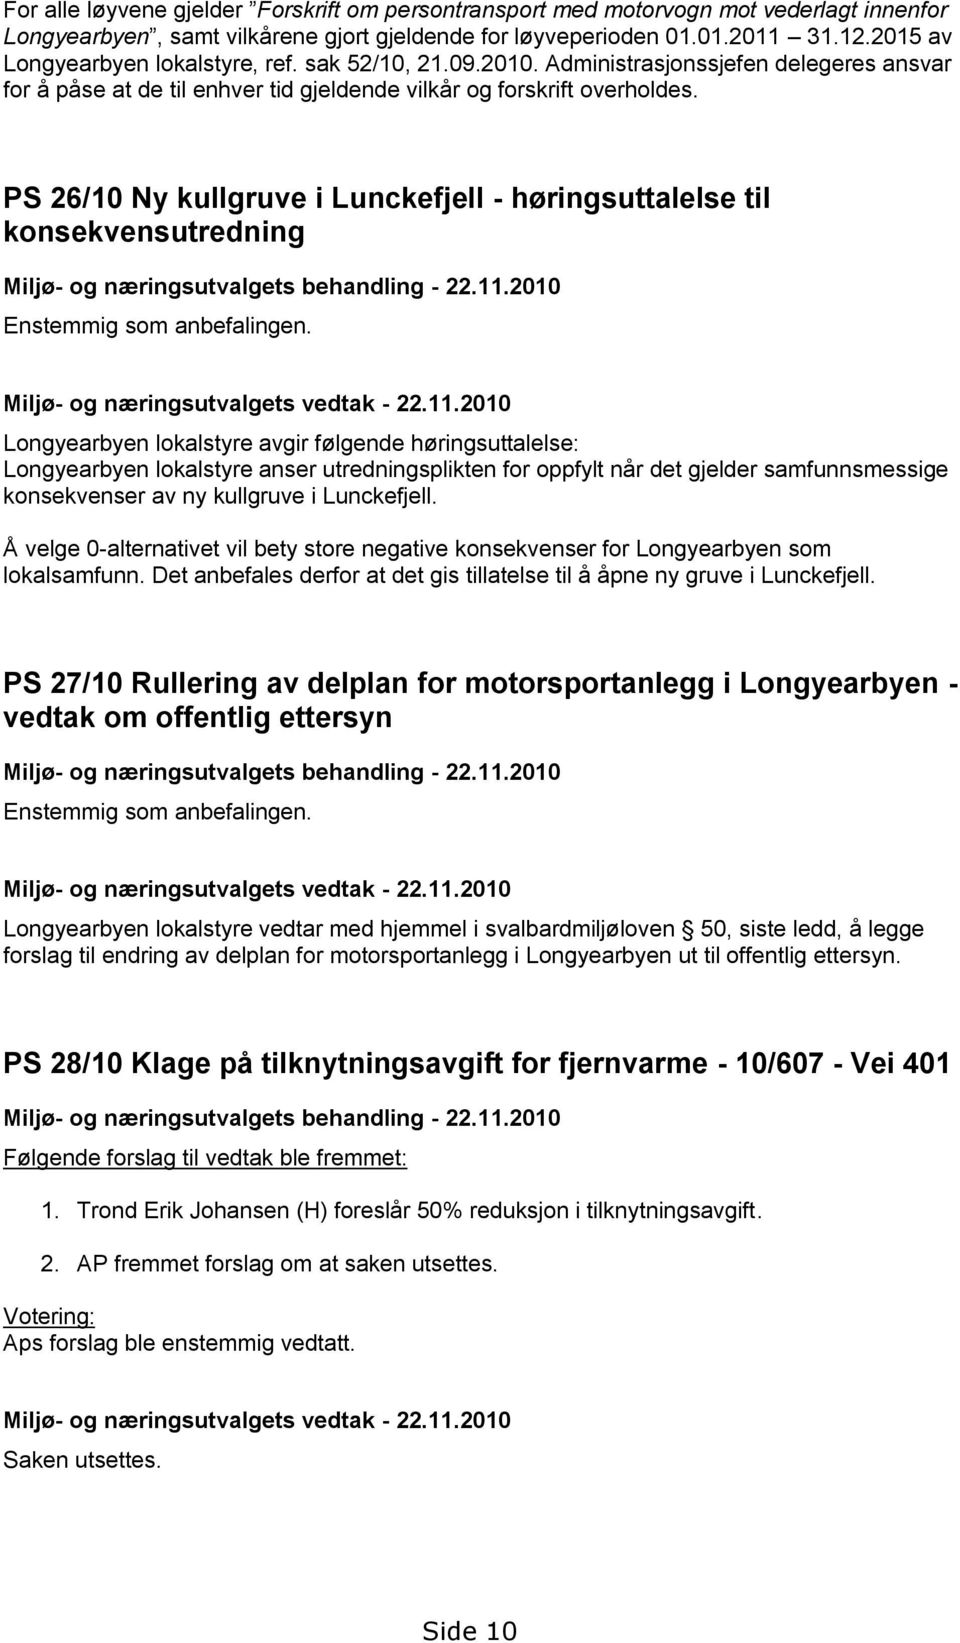 PS 26/10 Ny kullgruve i Lunckefjell - høringsuttalelse til konsekvensutredning Miljø- og næringsutvalgets behandling - 22.11.